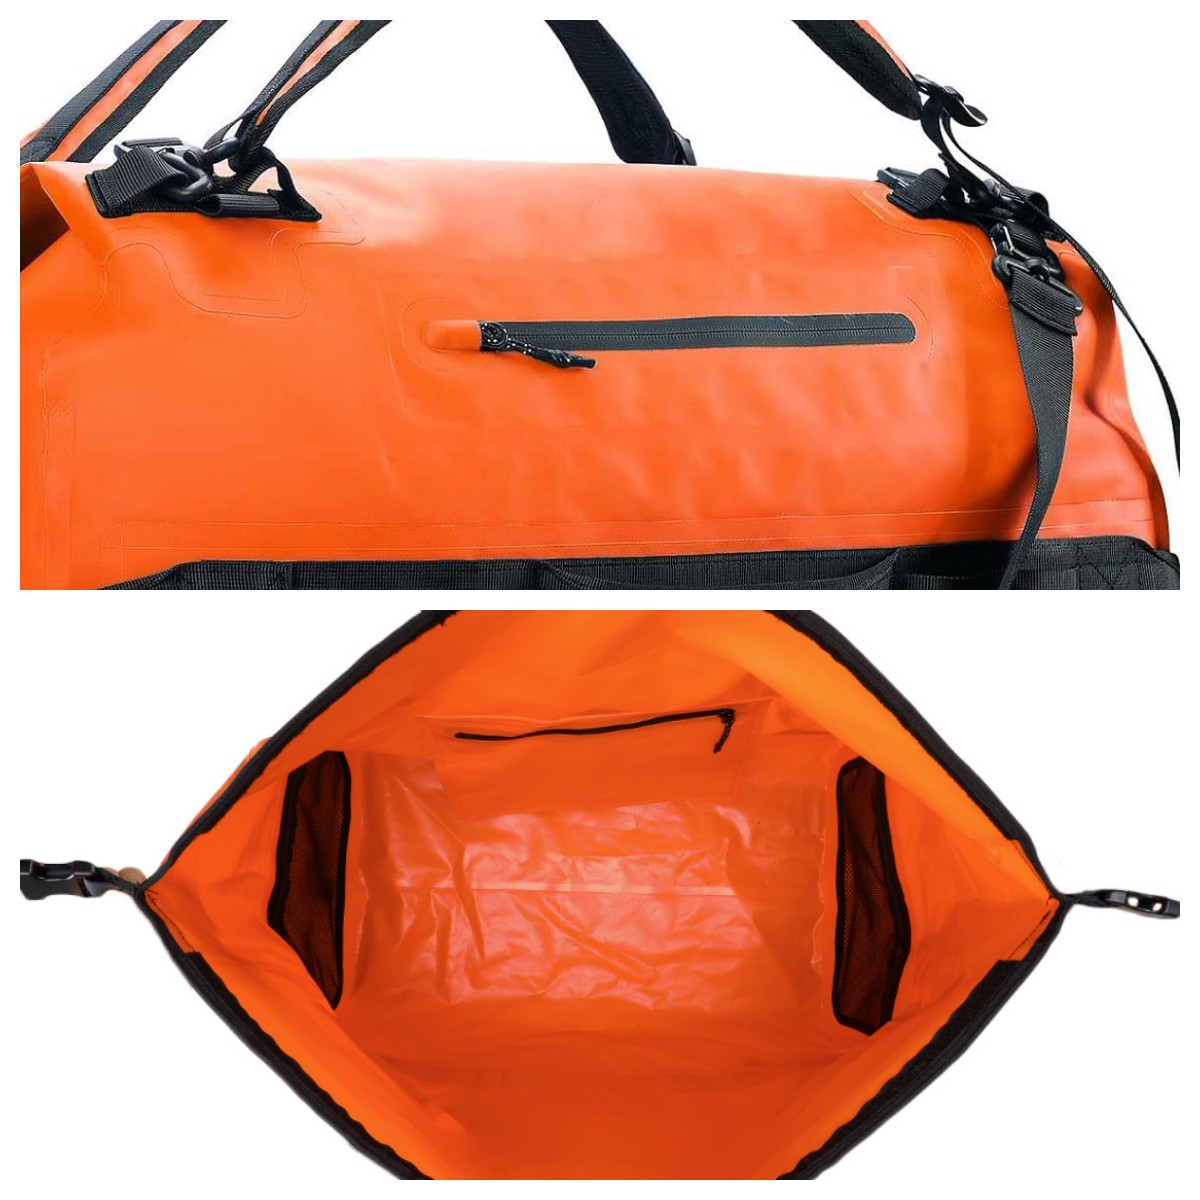 waterproof bag for hiking